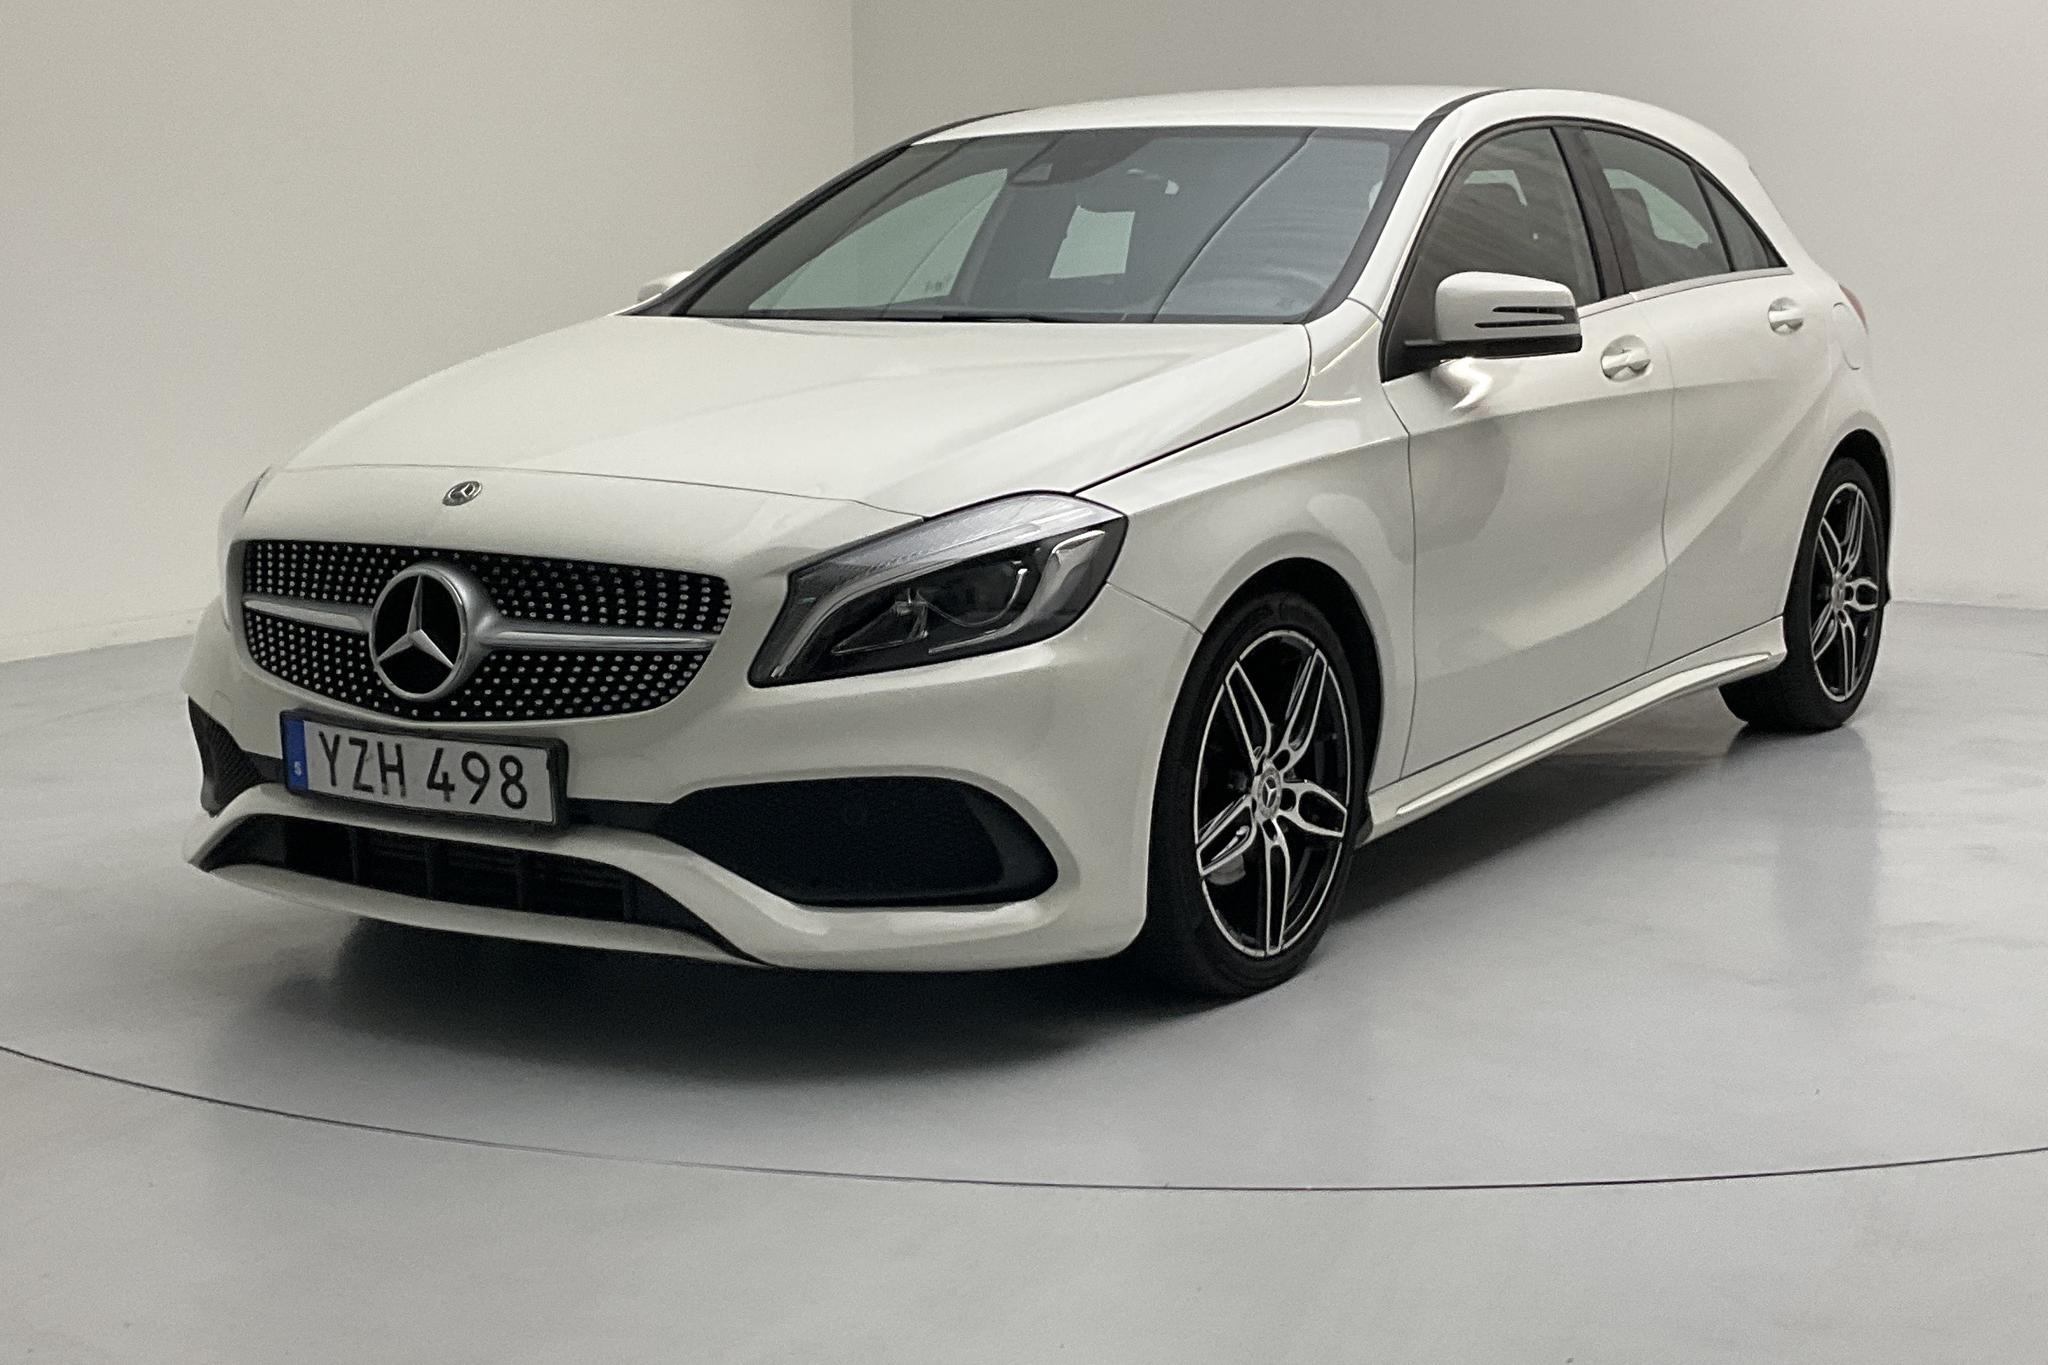 Mercedes A 180 5dr W176 (122hk) - 53 500 km - Manual - white - 2018